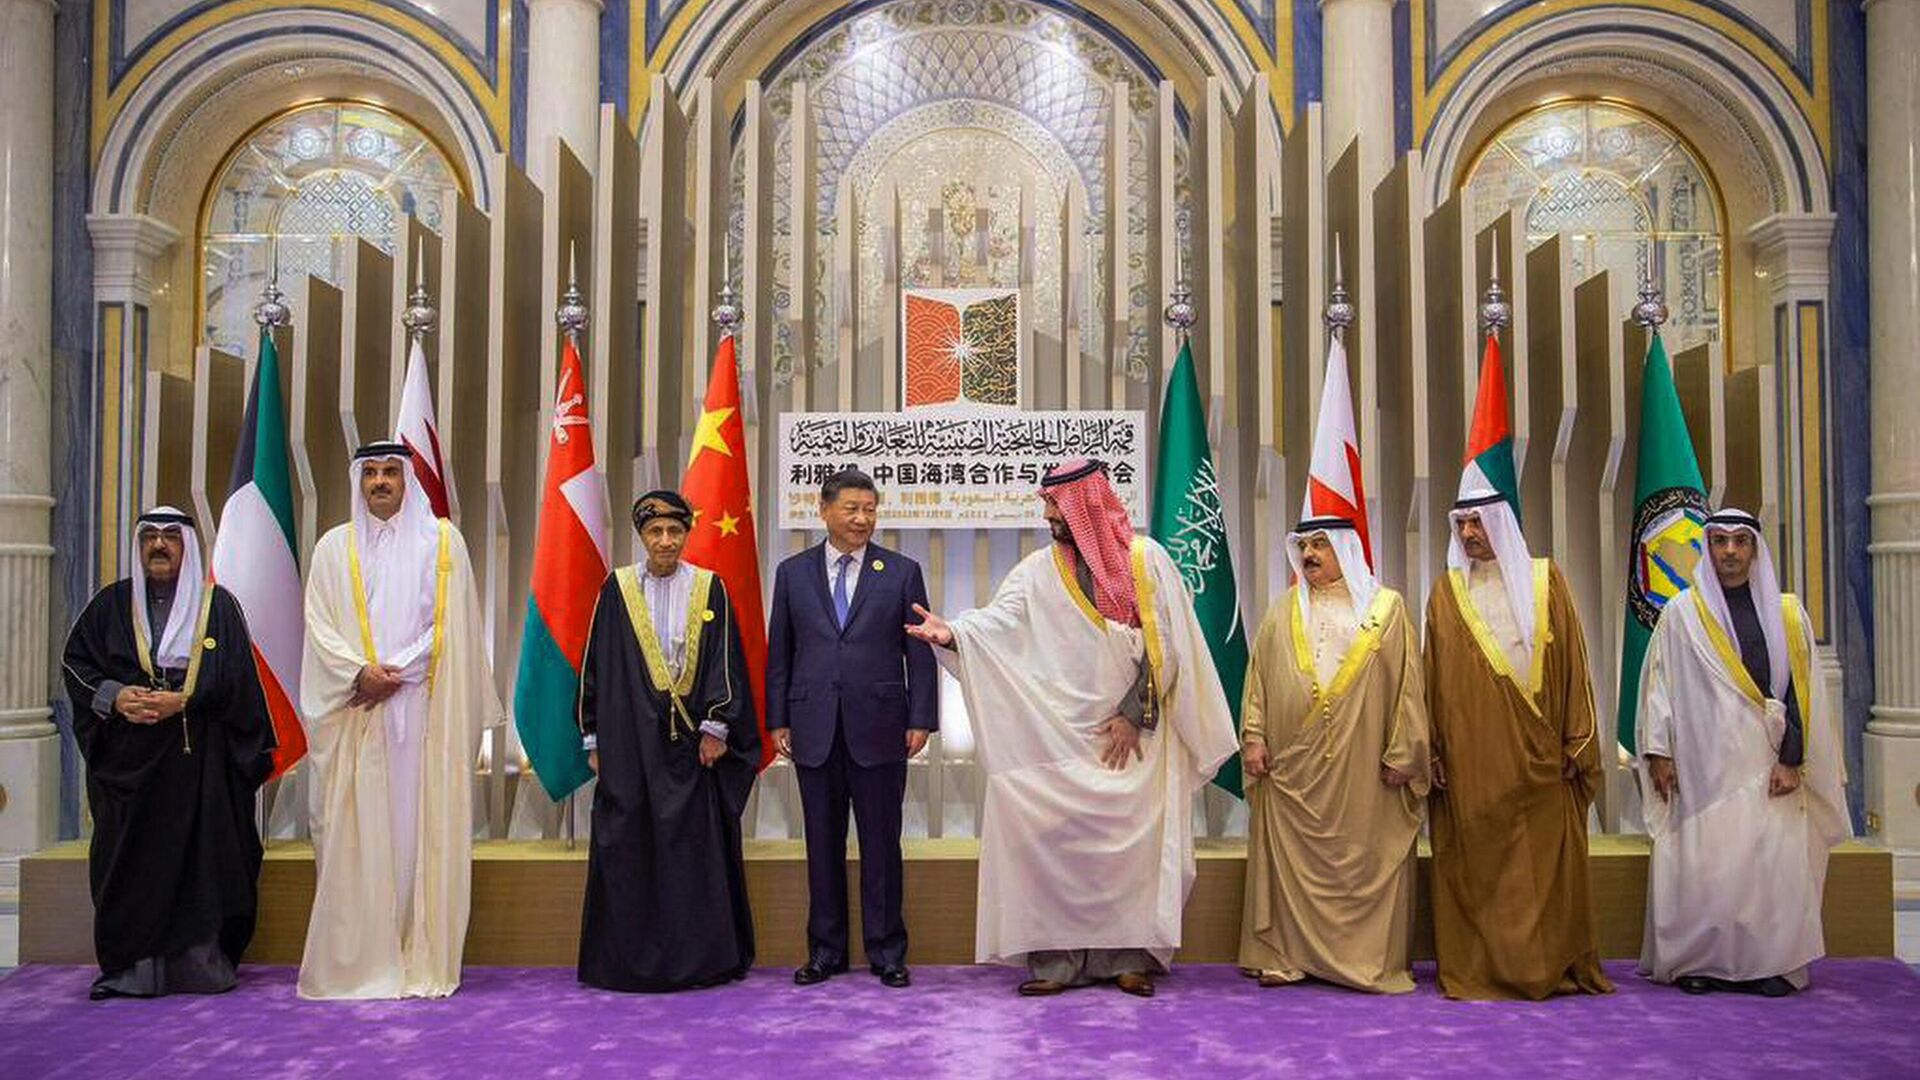 Председатель КНР Си Цзиньпин и наследный принц Саудовской Аравии Мухаммед бен Салман во время встречи в Эр-Рияде. 9 декабря 2022 года - ИноСМИ, 1920, 31.03.2023